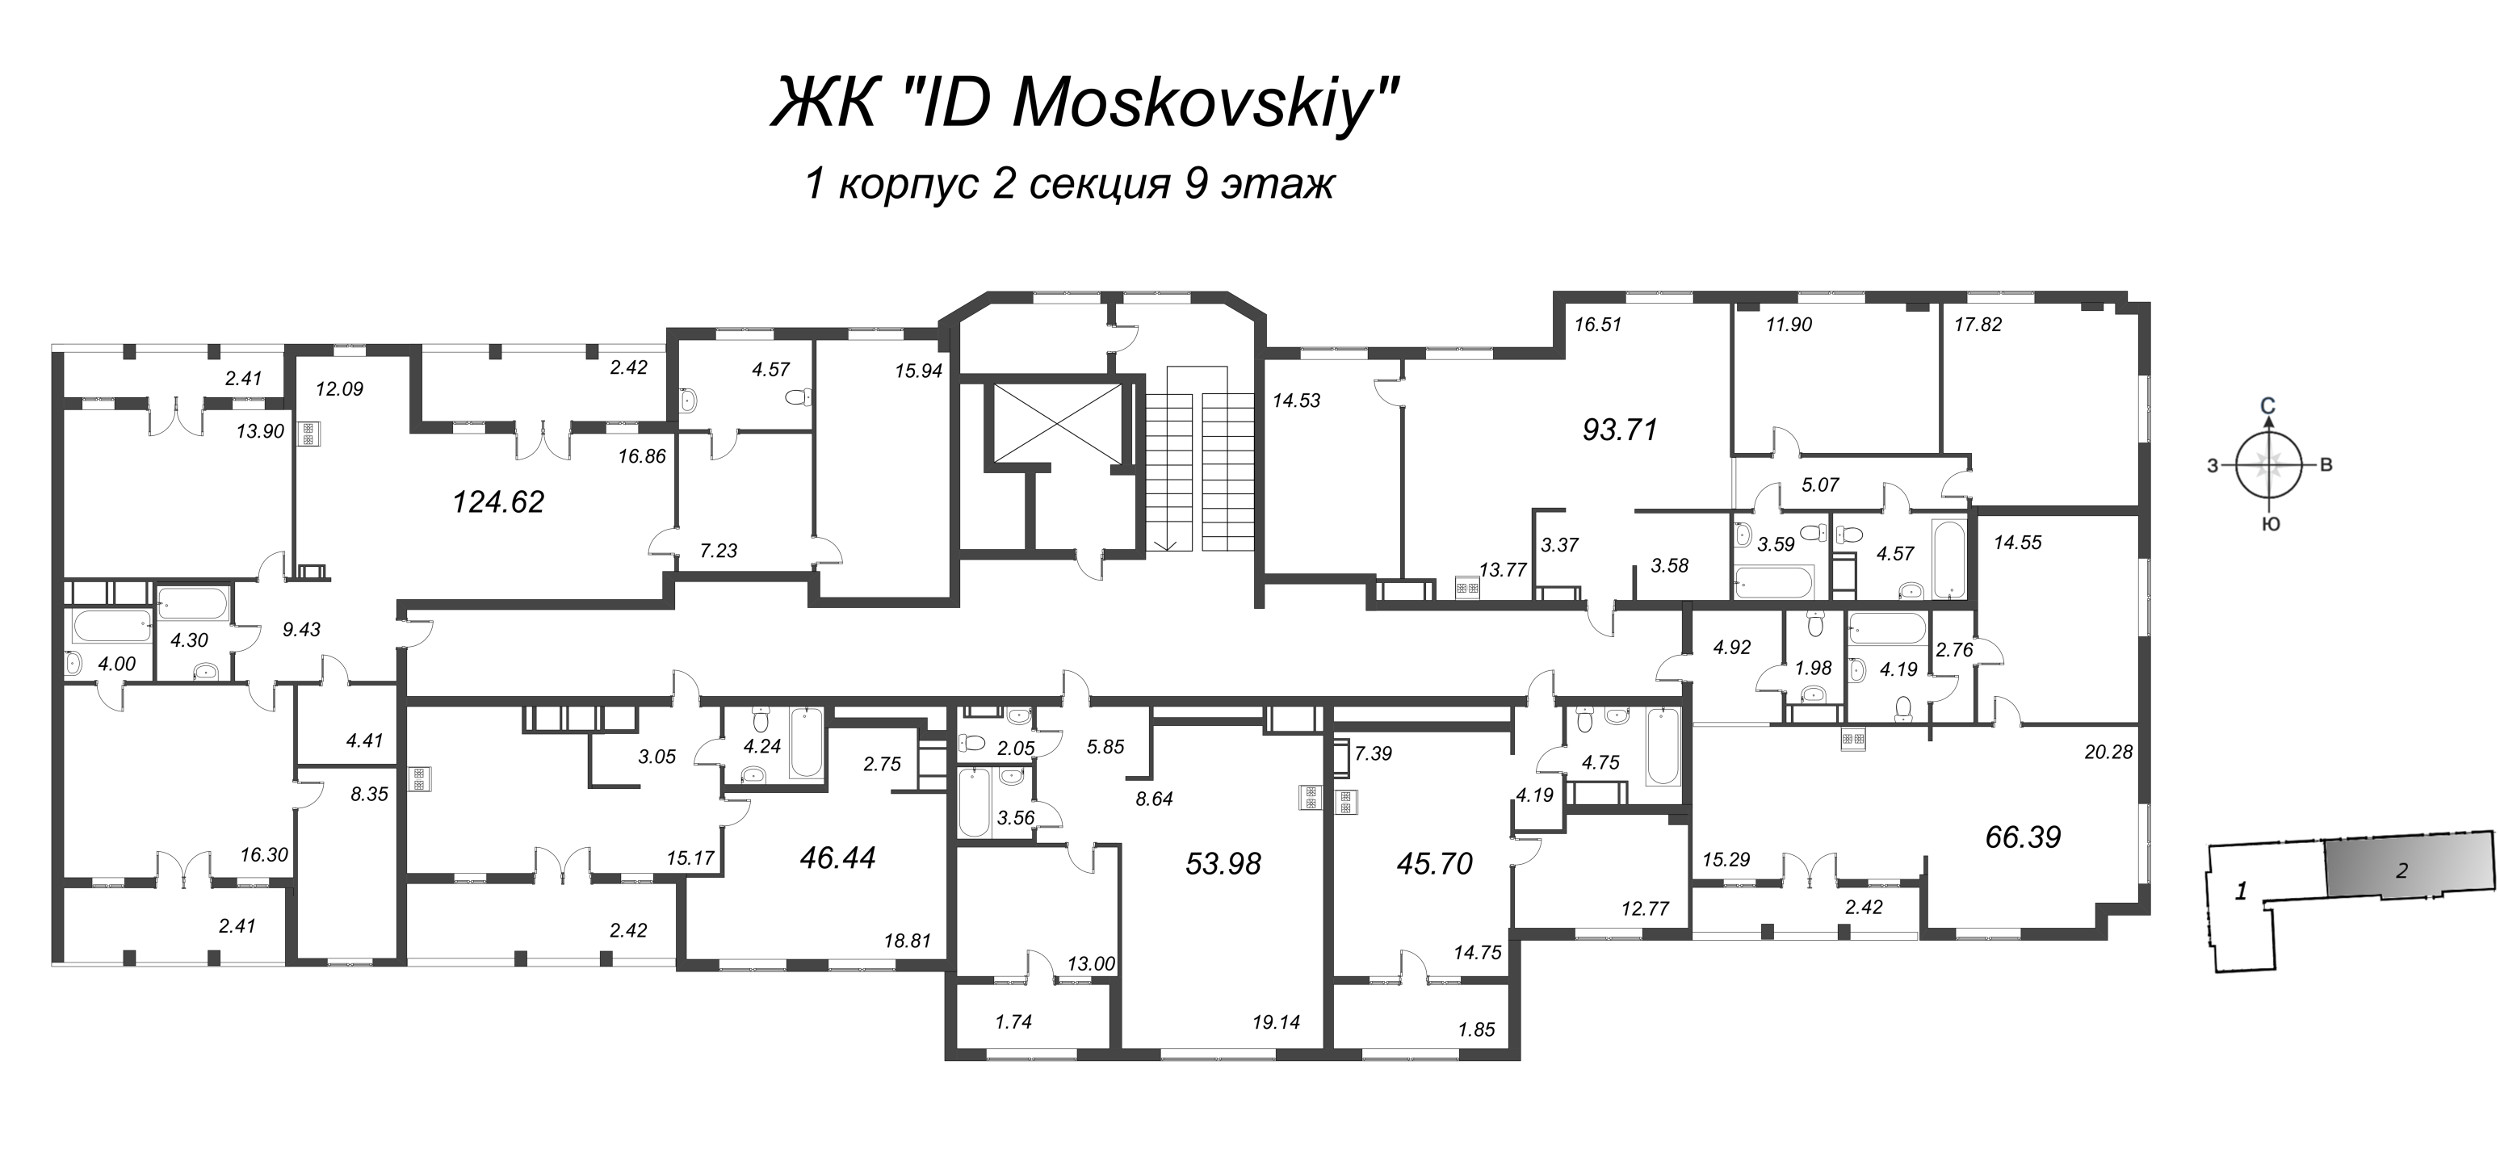 2-комнатная квартира, 66.39 м² в ЖК "ID Moskovskiy" - планировка этажа